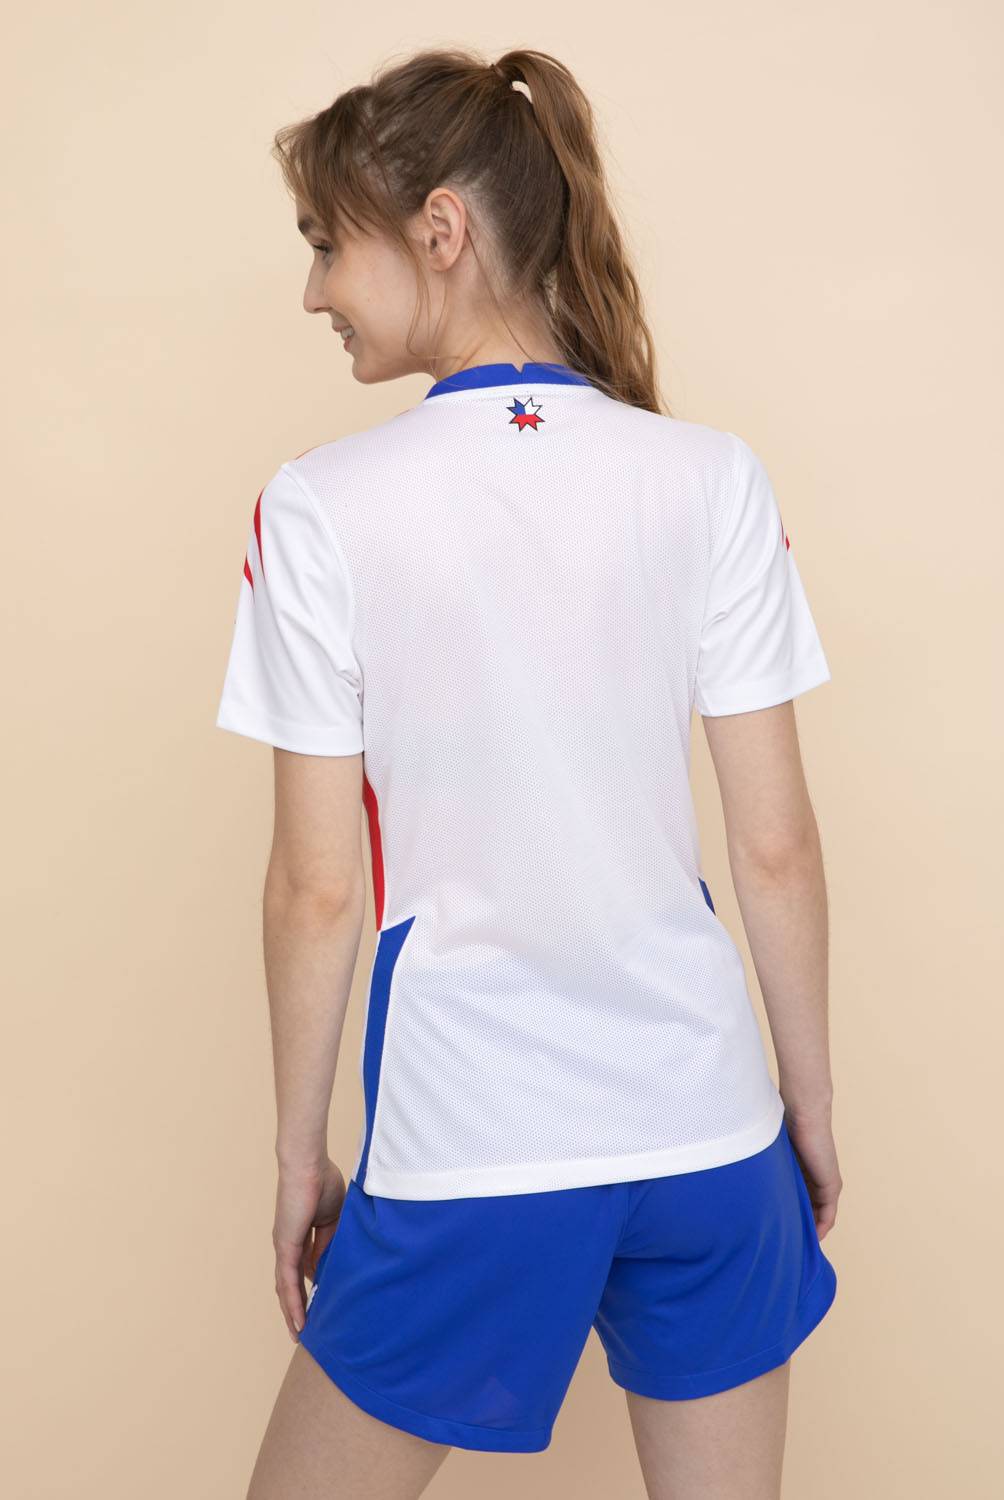 NIKE - Camiseta Chile Mujer Fútbol Visitante